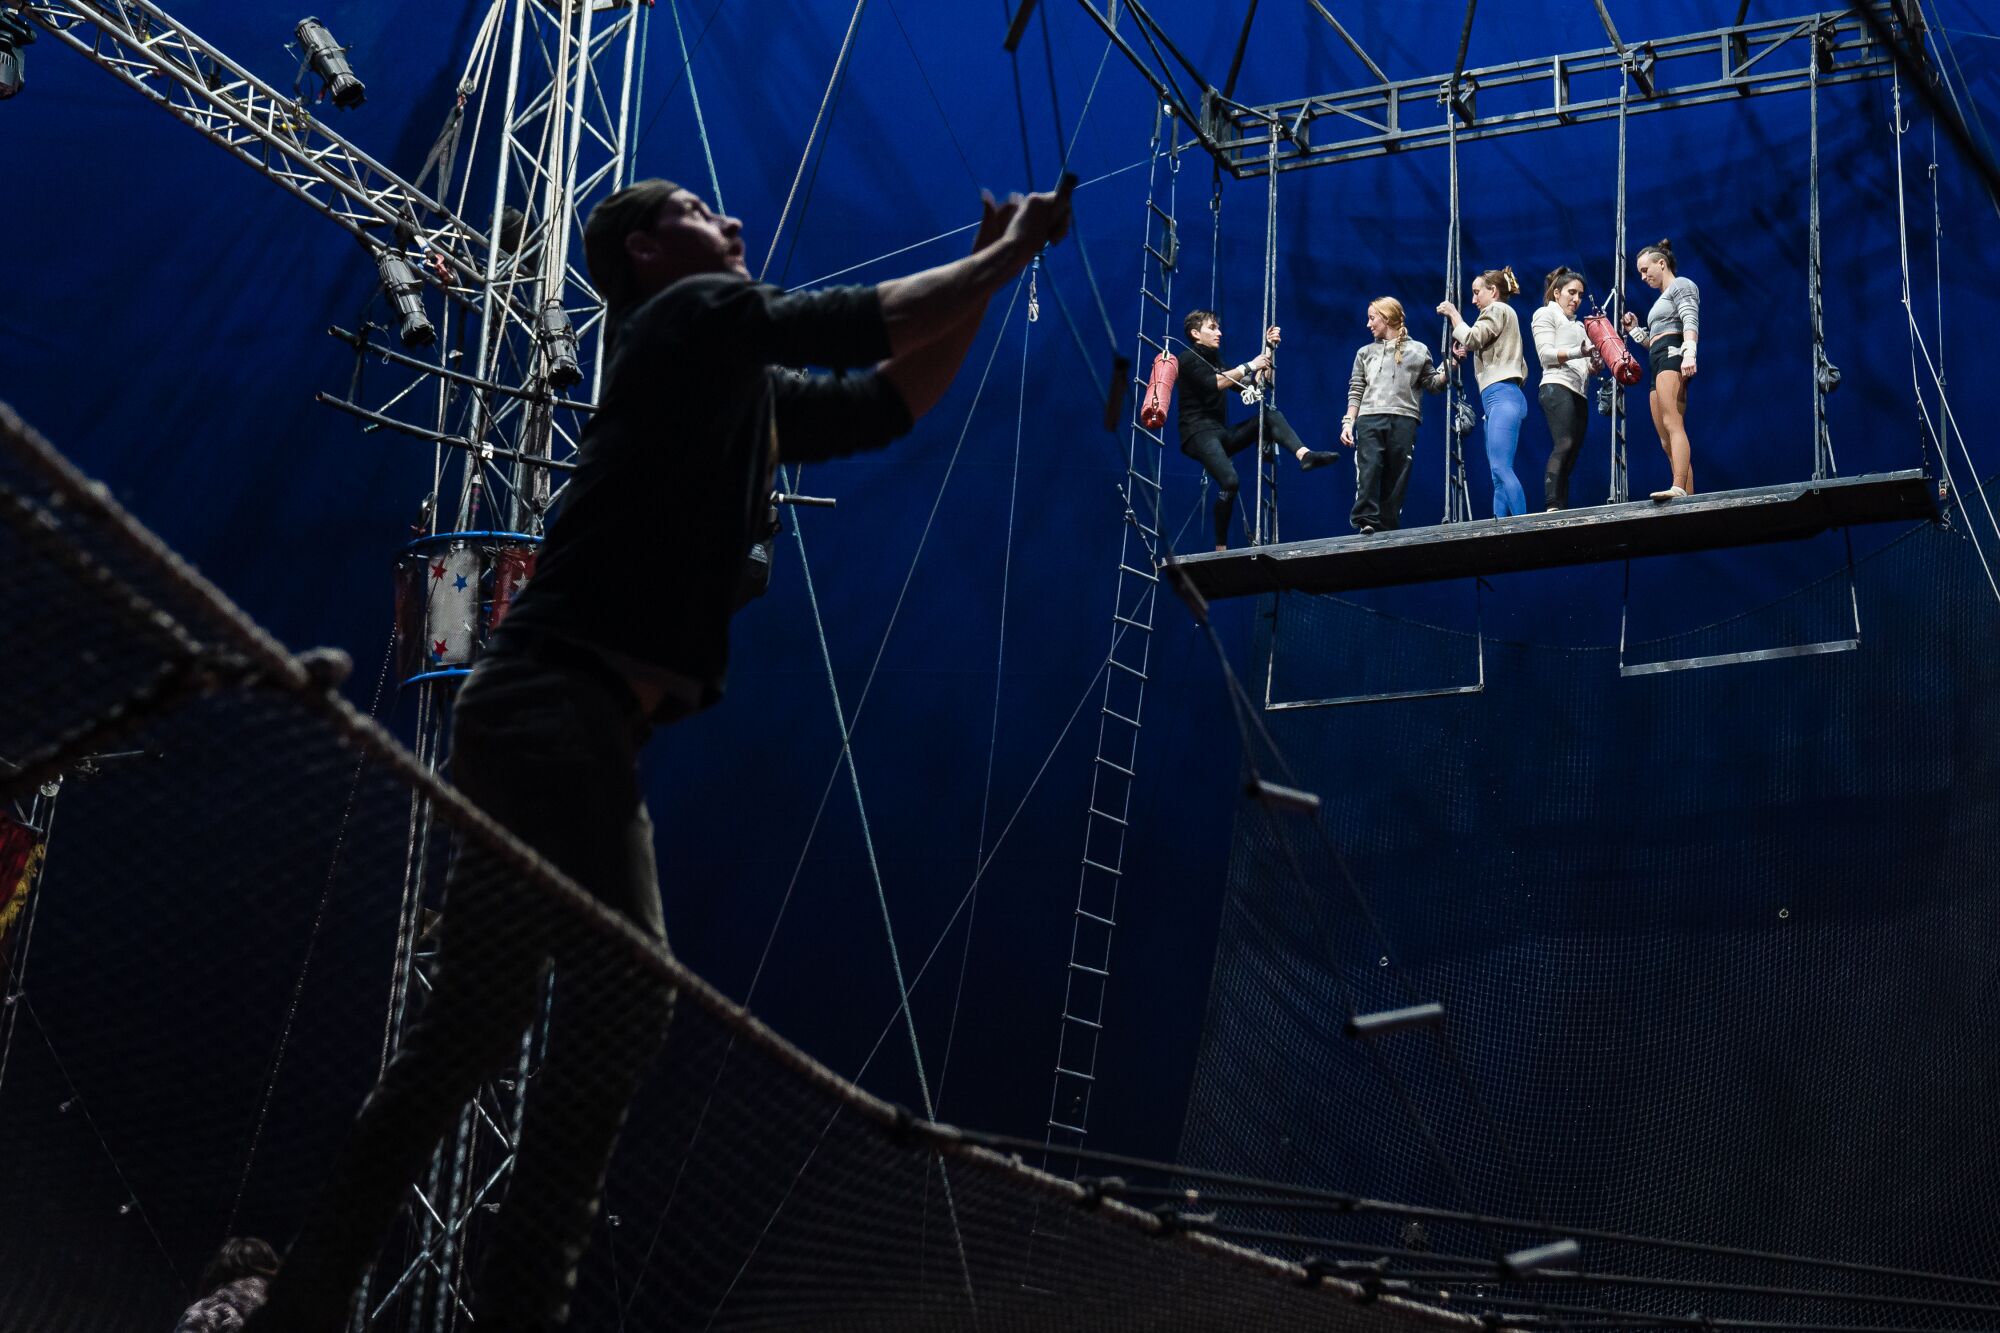 El director del escenario, Tad Payne-Tobin, revisa el trapecio antes de que los artistas practiquen.